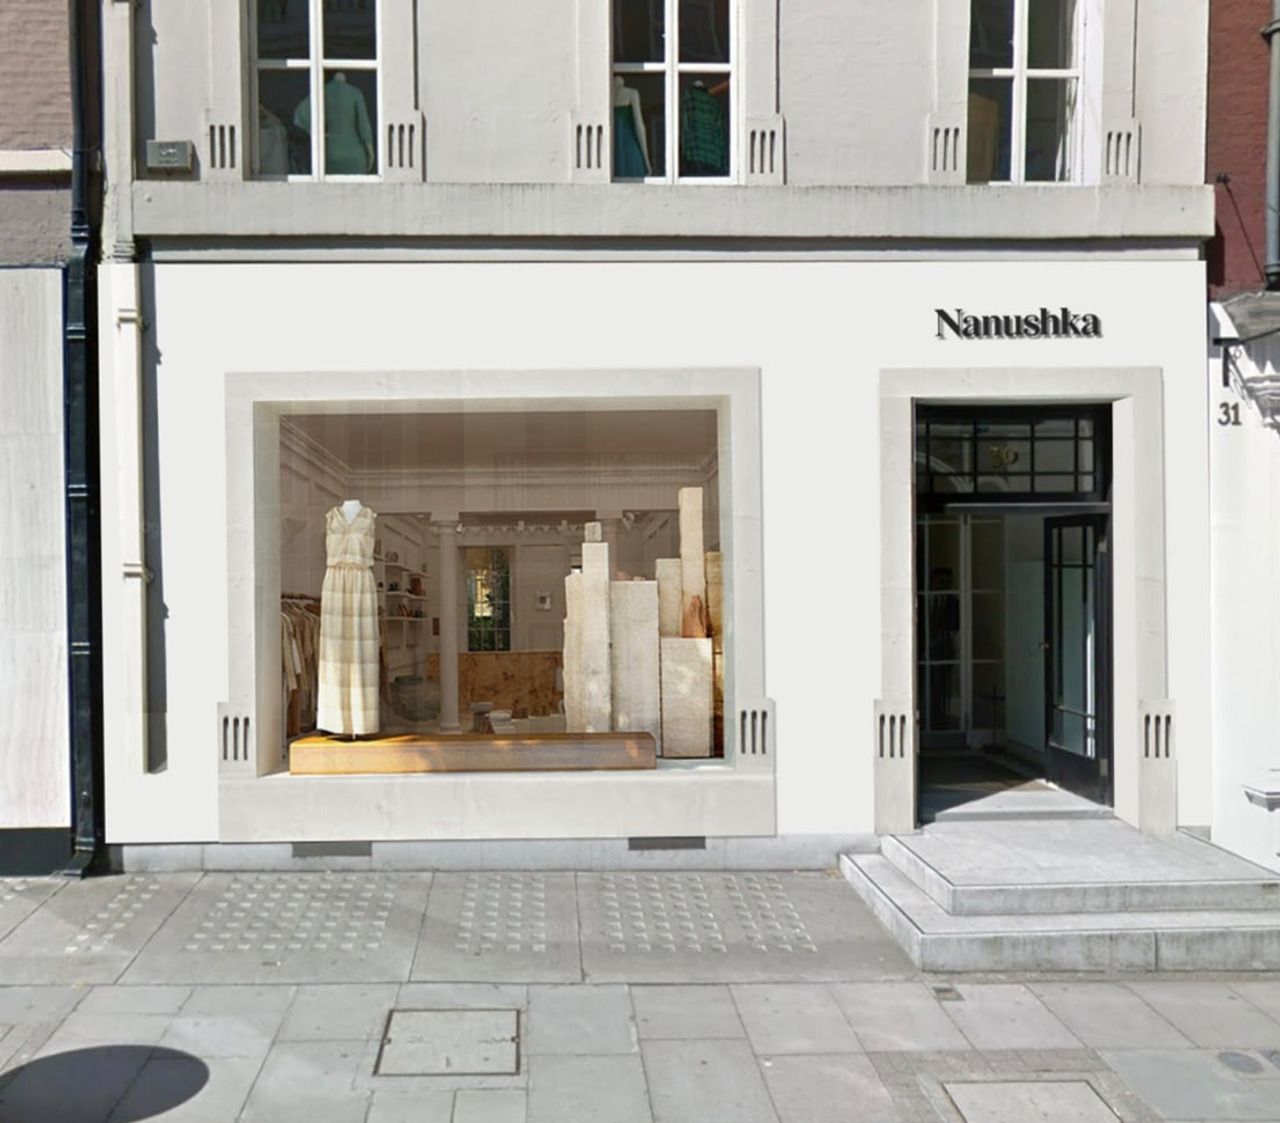 Hotelek hangulatát idézi a Nanushka frissen megnyílt üzlete Londonban